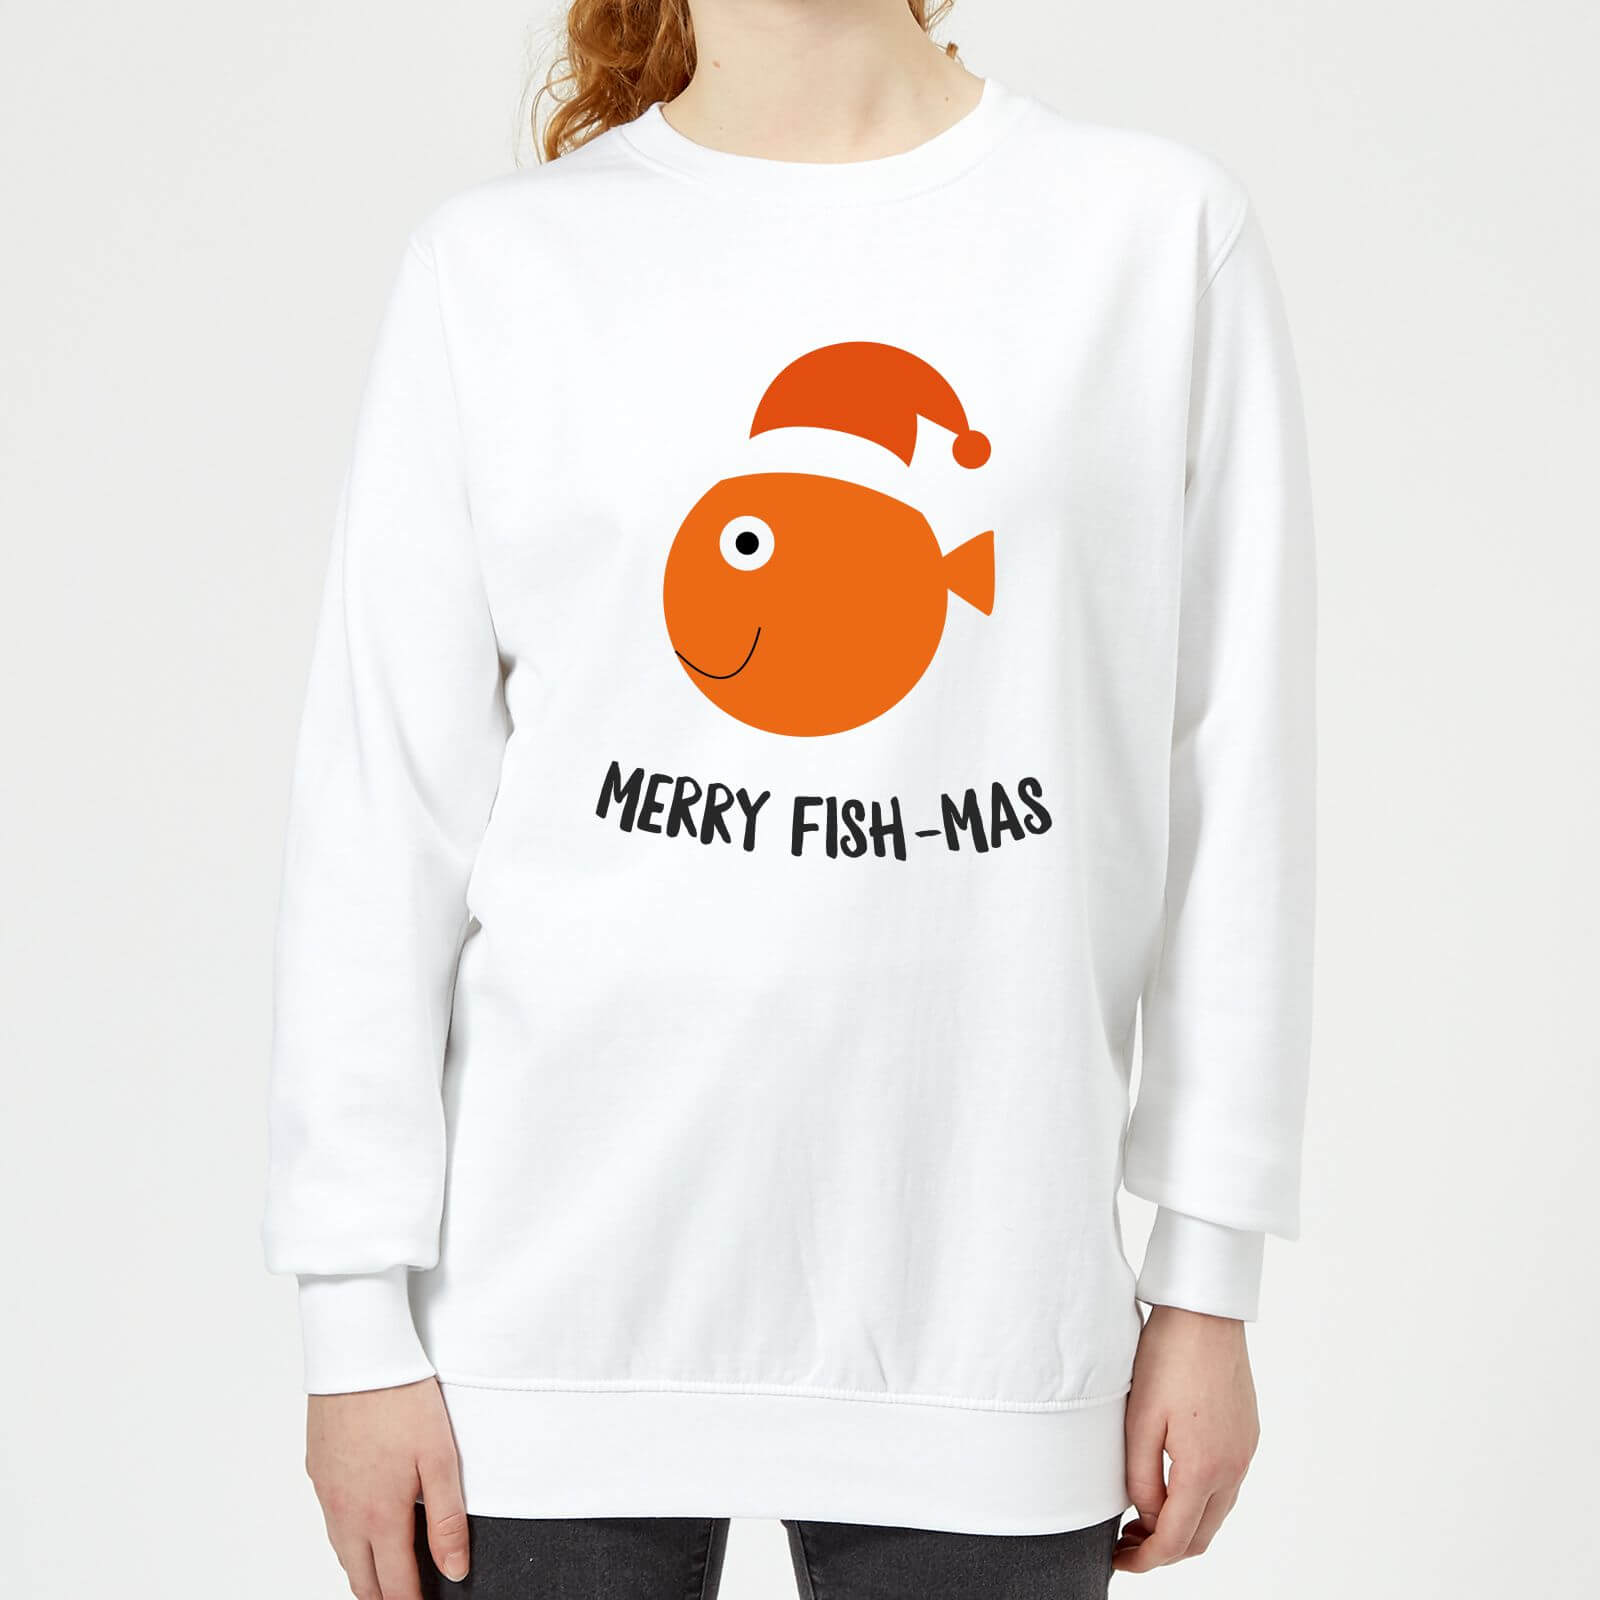 Merry Fish-Mas Women's Christmas Sweatshirt - White - XS - White